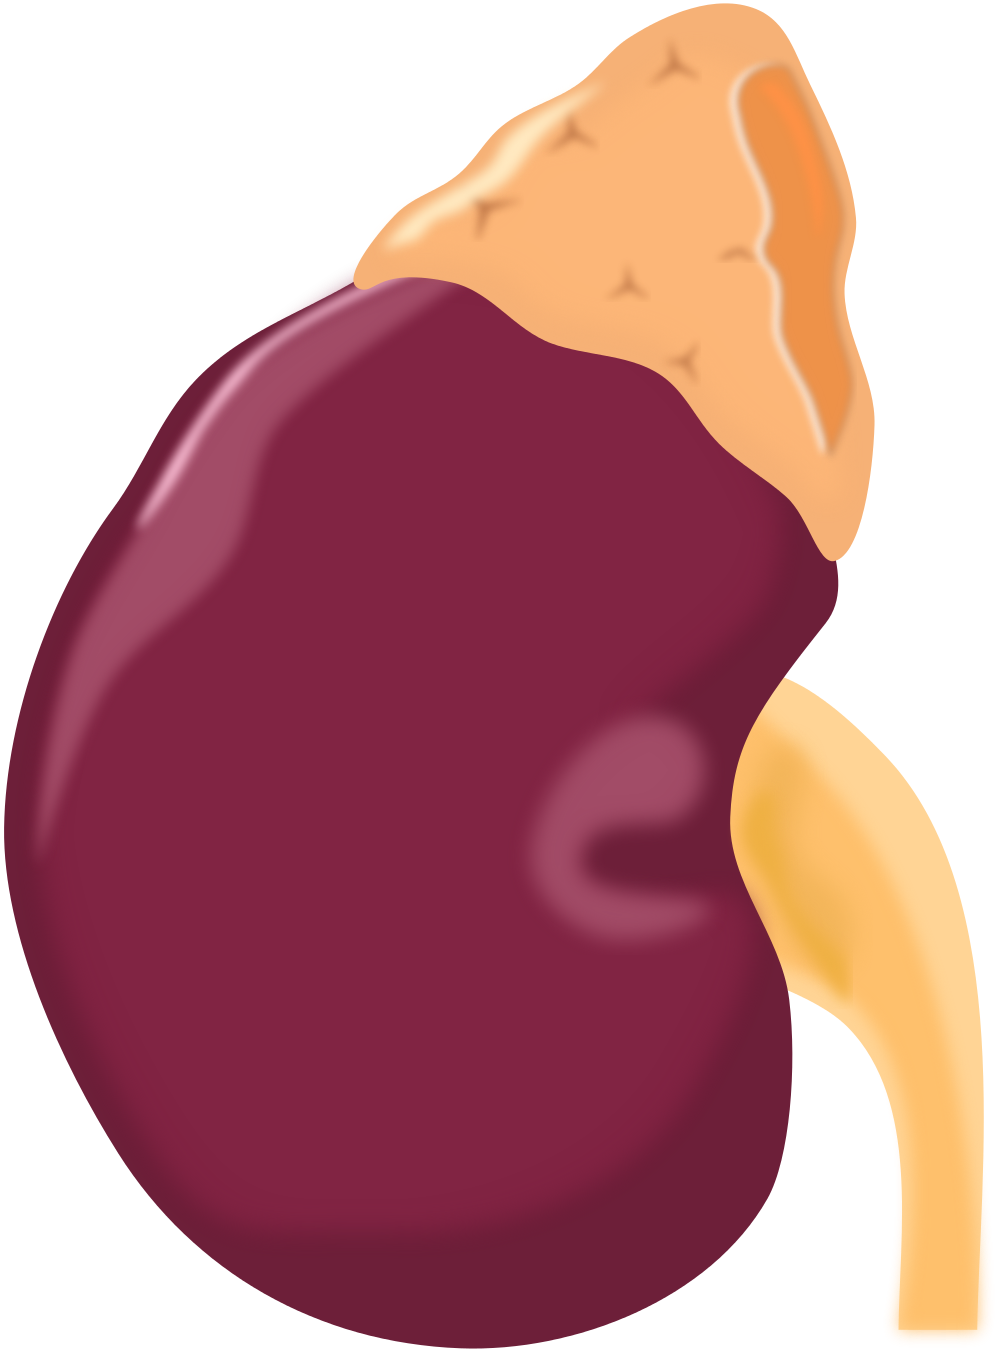 Liver clipart illustration. File azex kidney svg